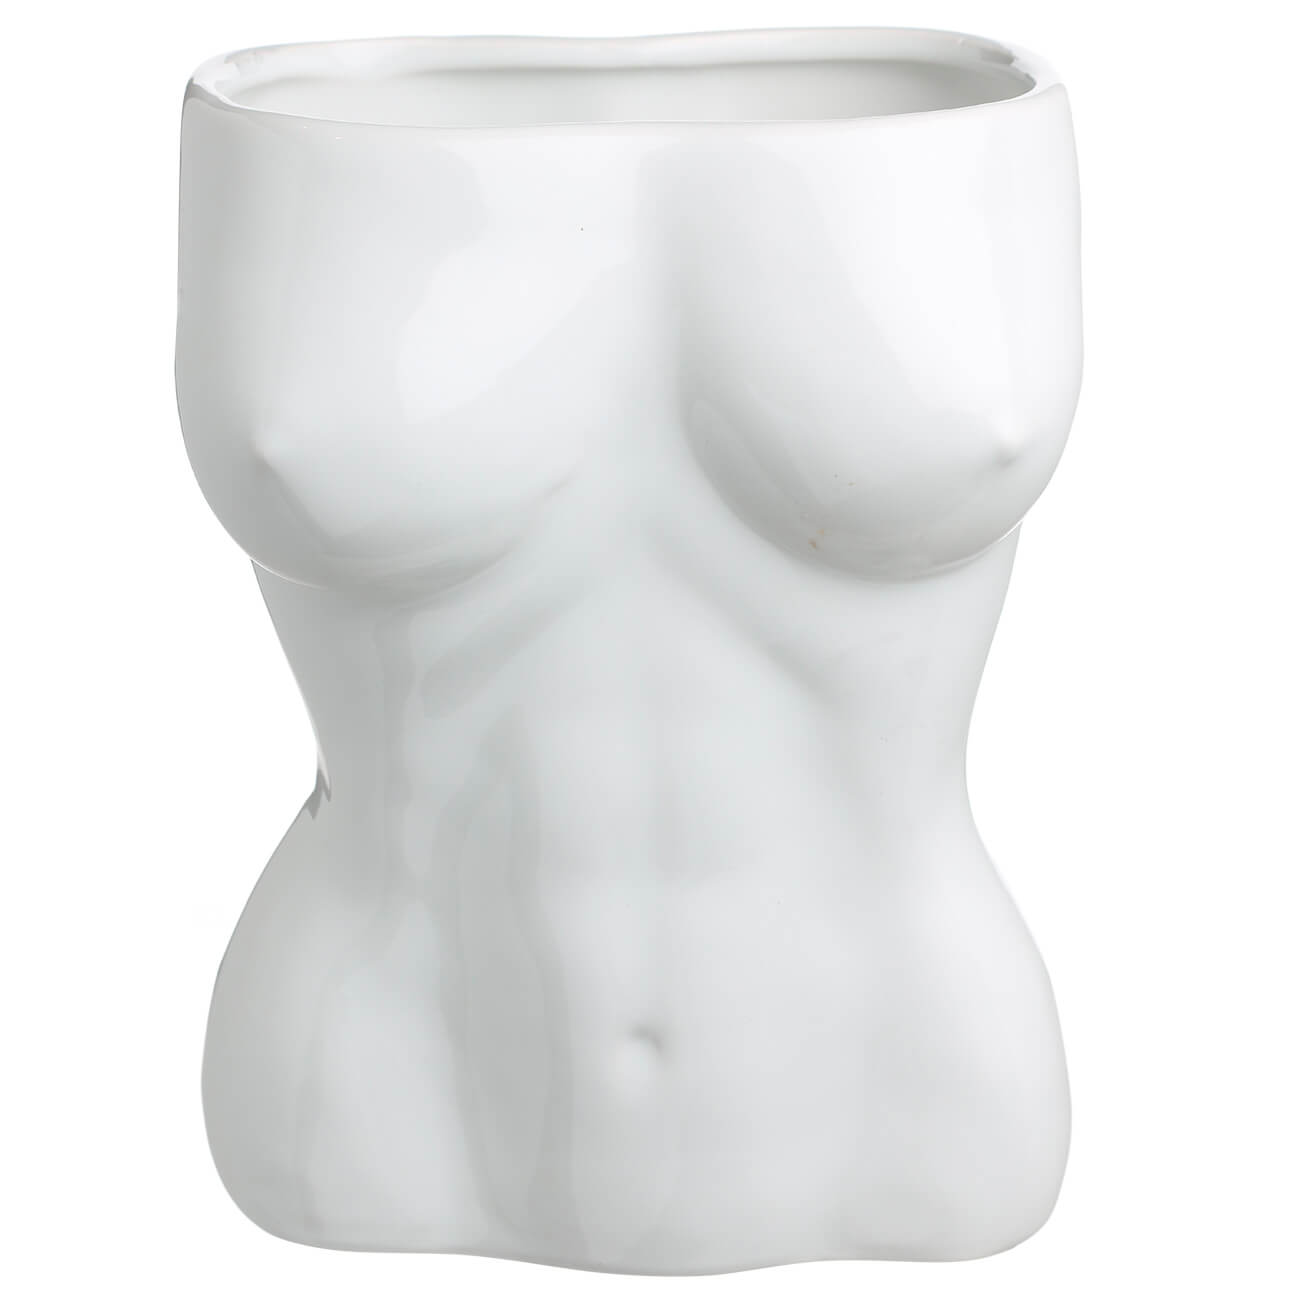 ваза stripe керамика разно ная 20 см Ваза для цветов, 19 см, декоративная, керамика, белая, Женский бюст, Torso